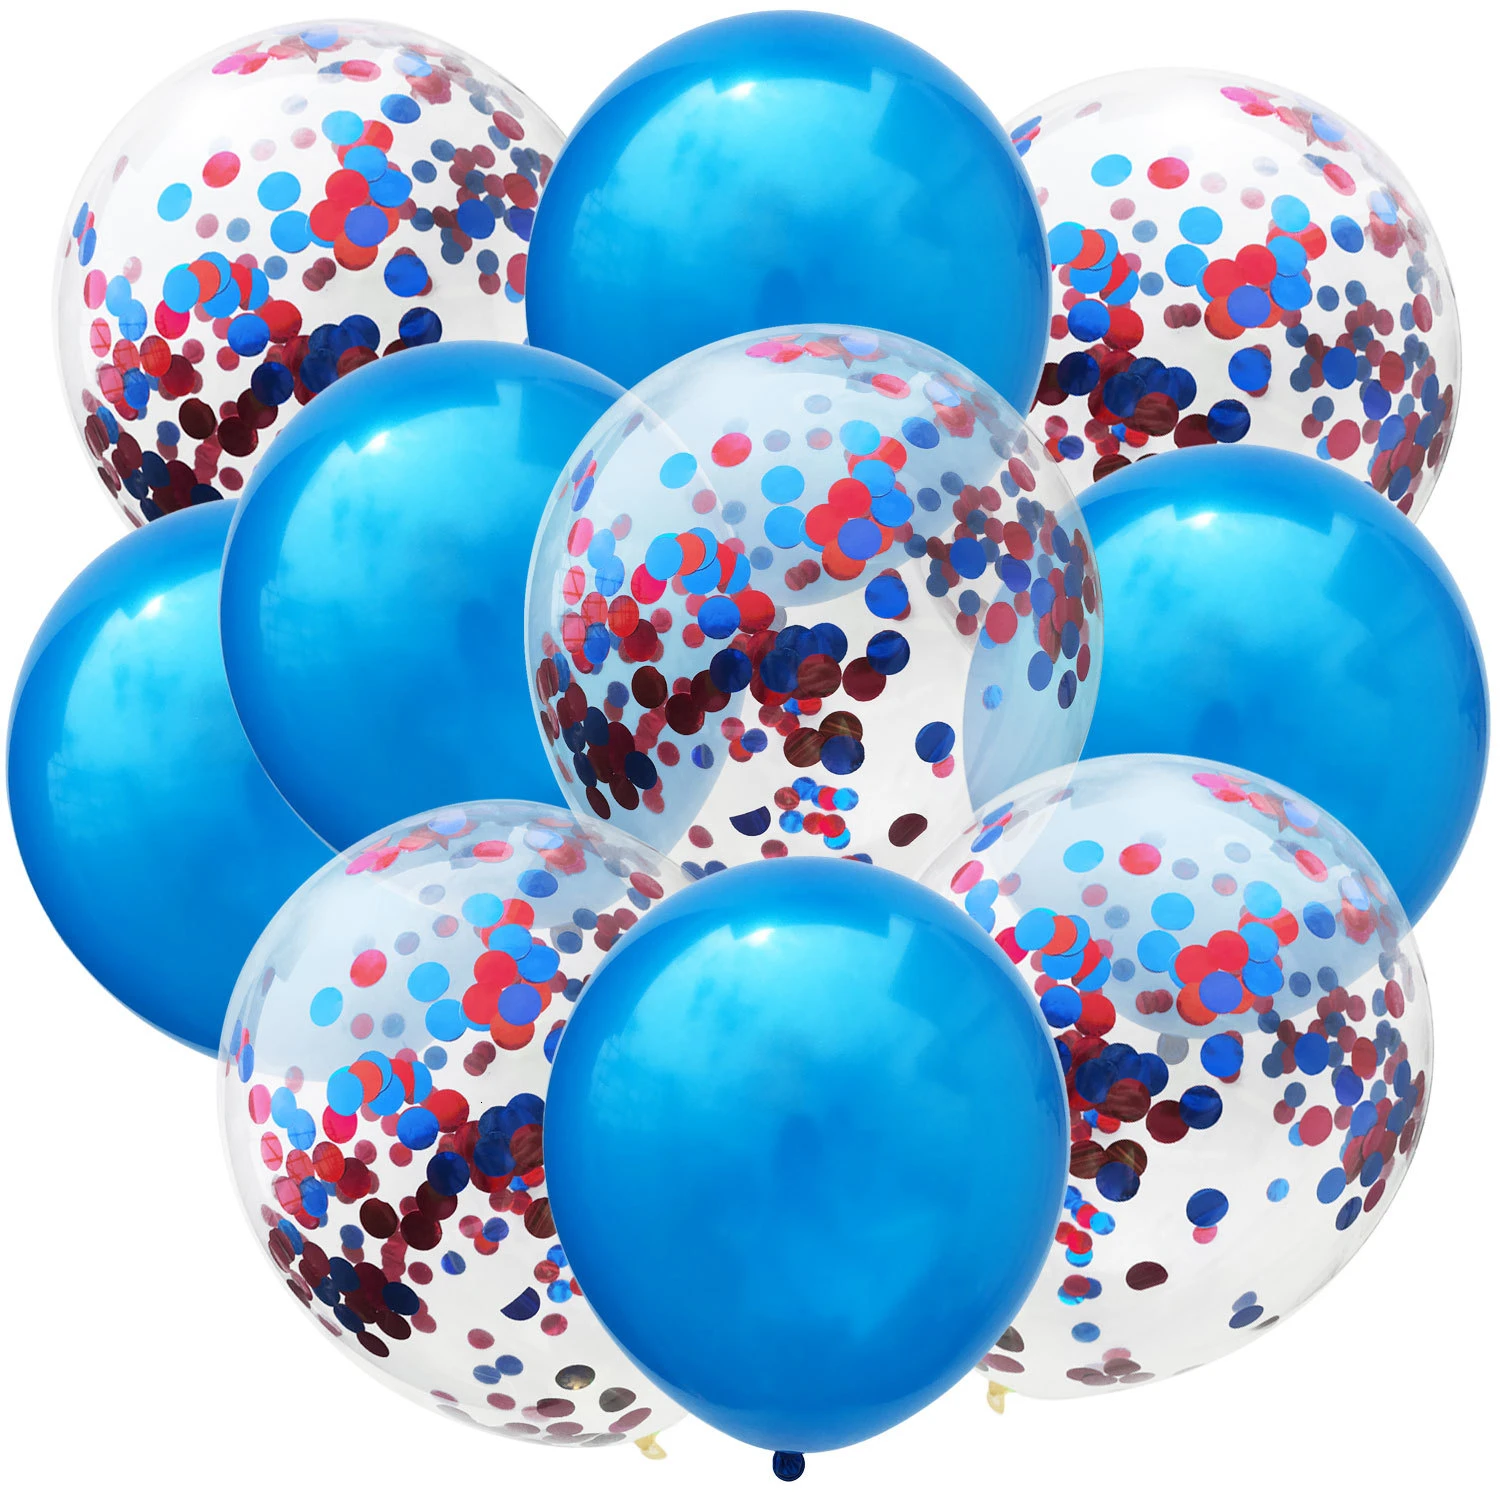 10 шт. Металлические Синие цвета 12 дюймов латексные шары золотые конфетти воздушные шары надувной шар для дня рождения свадебные принадлежности - Цвет: 5 BR con 5 blue